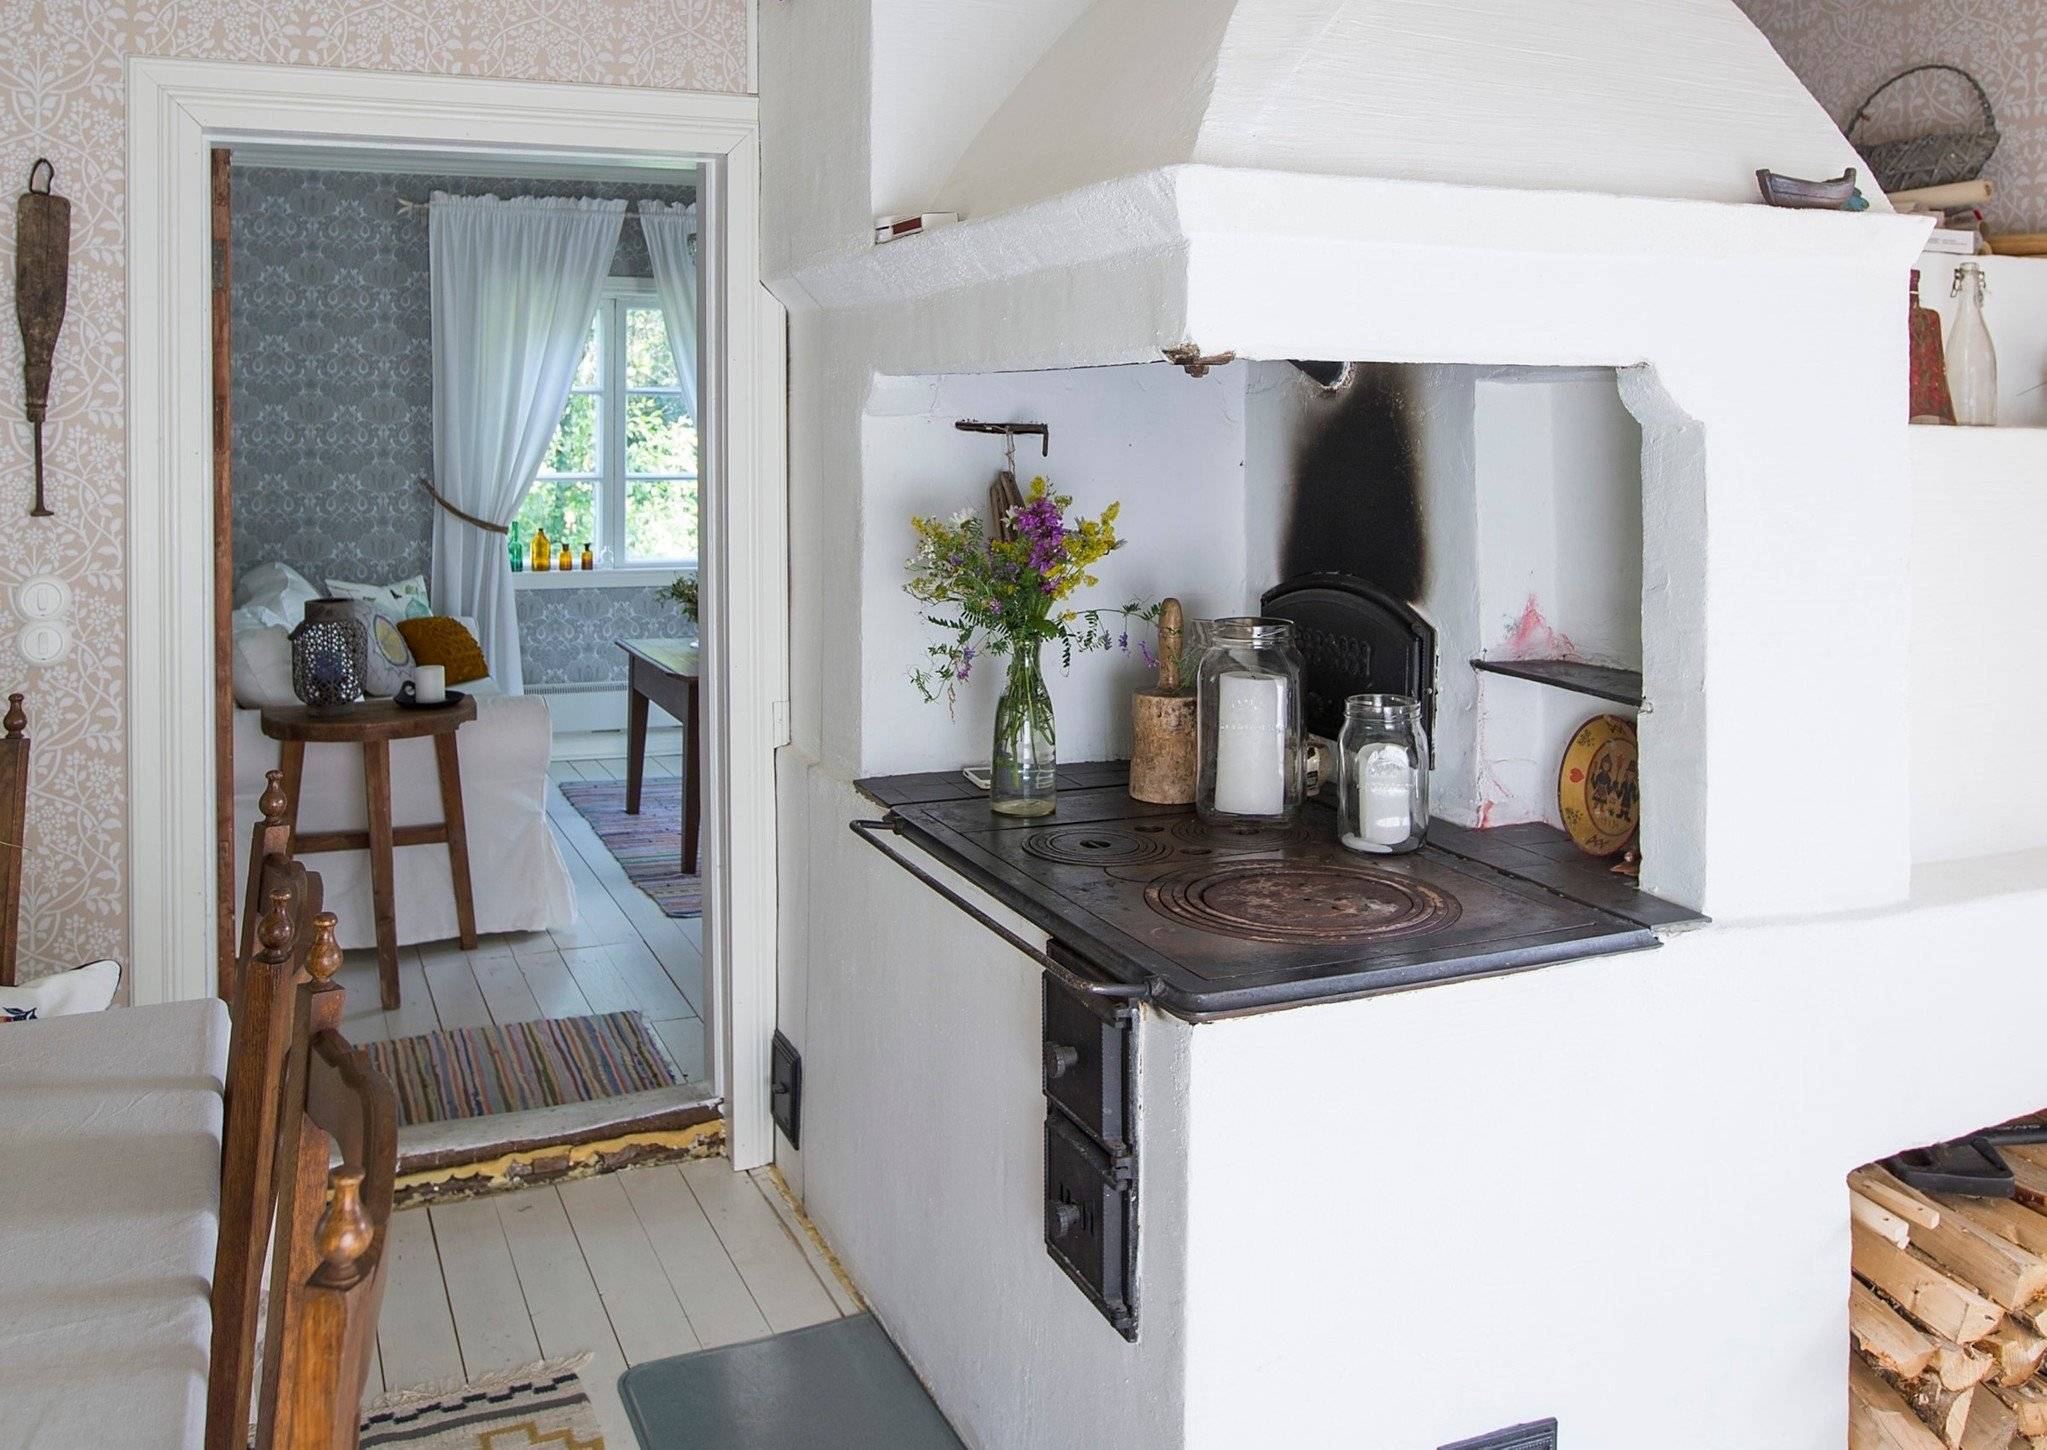 Кухня в деревянном доме: 50 фото красивых интерьеров, лучшие идеи дизайна